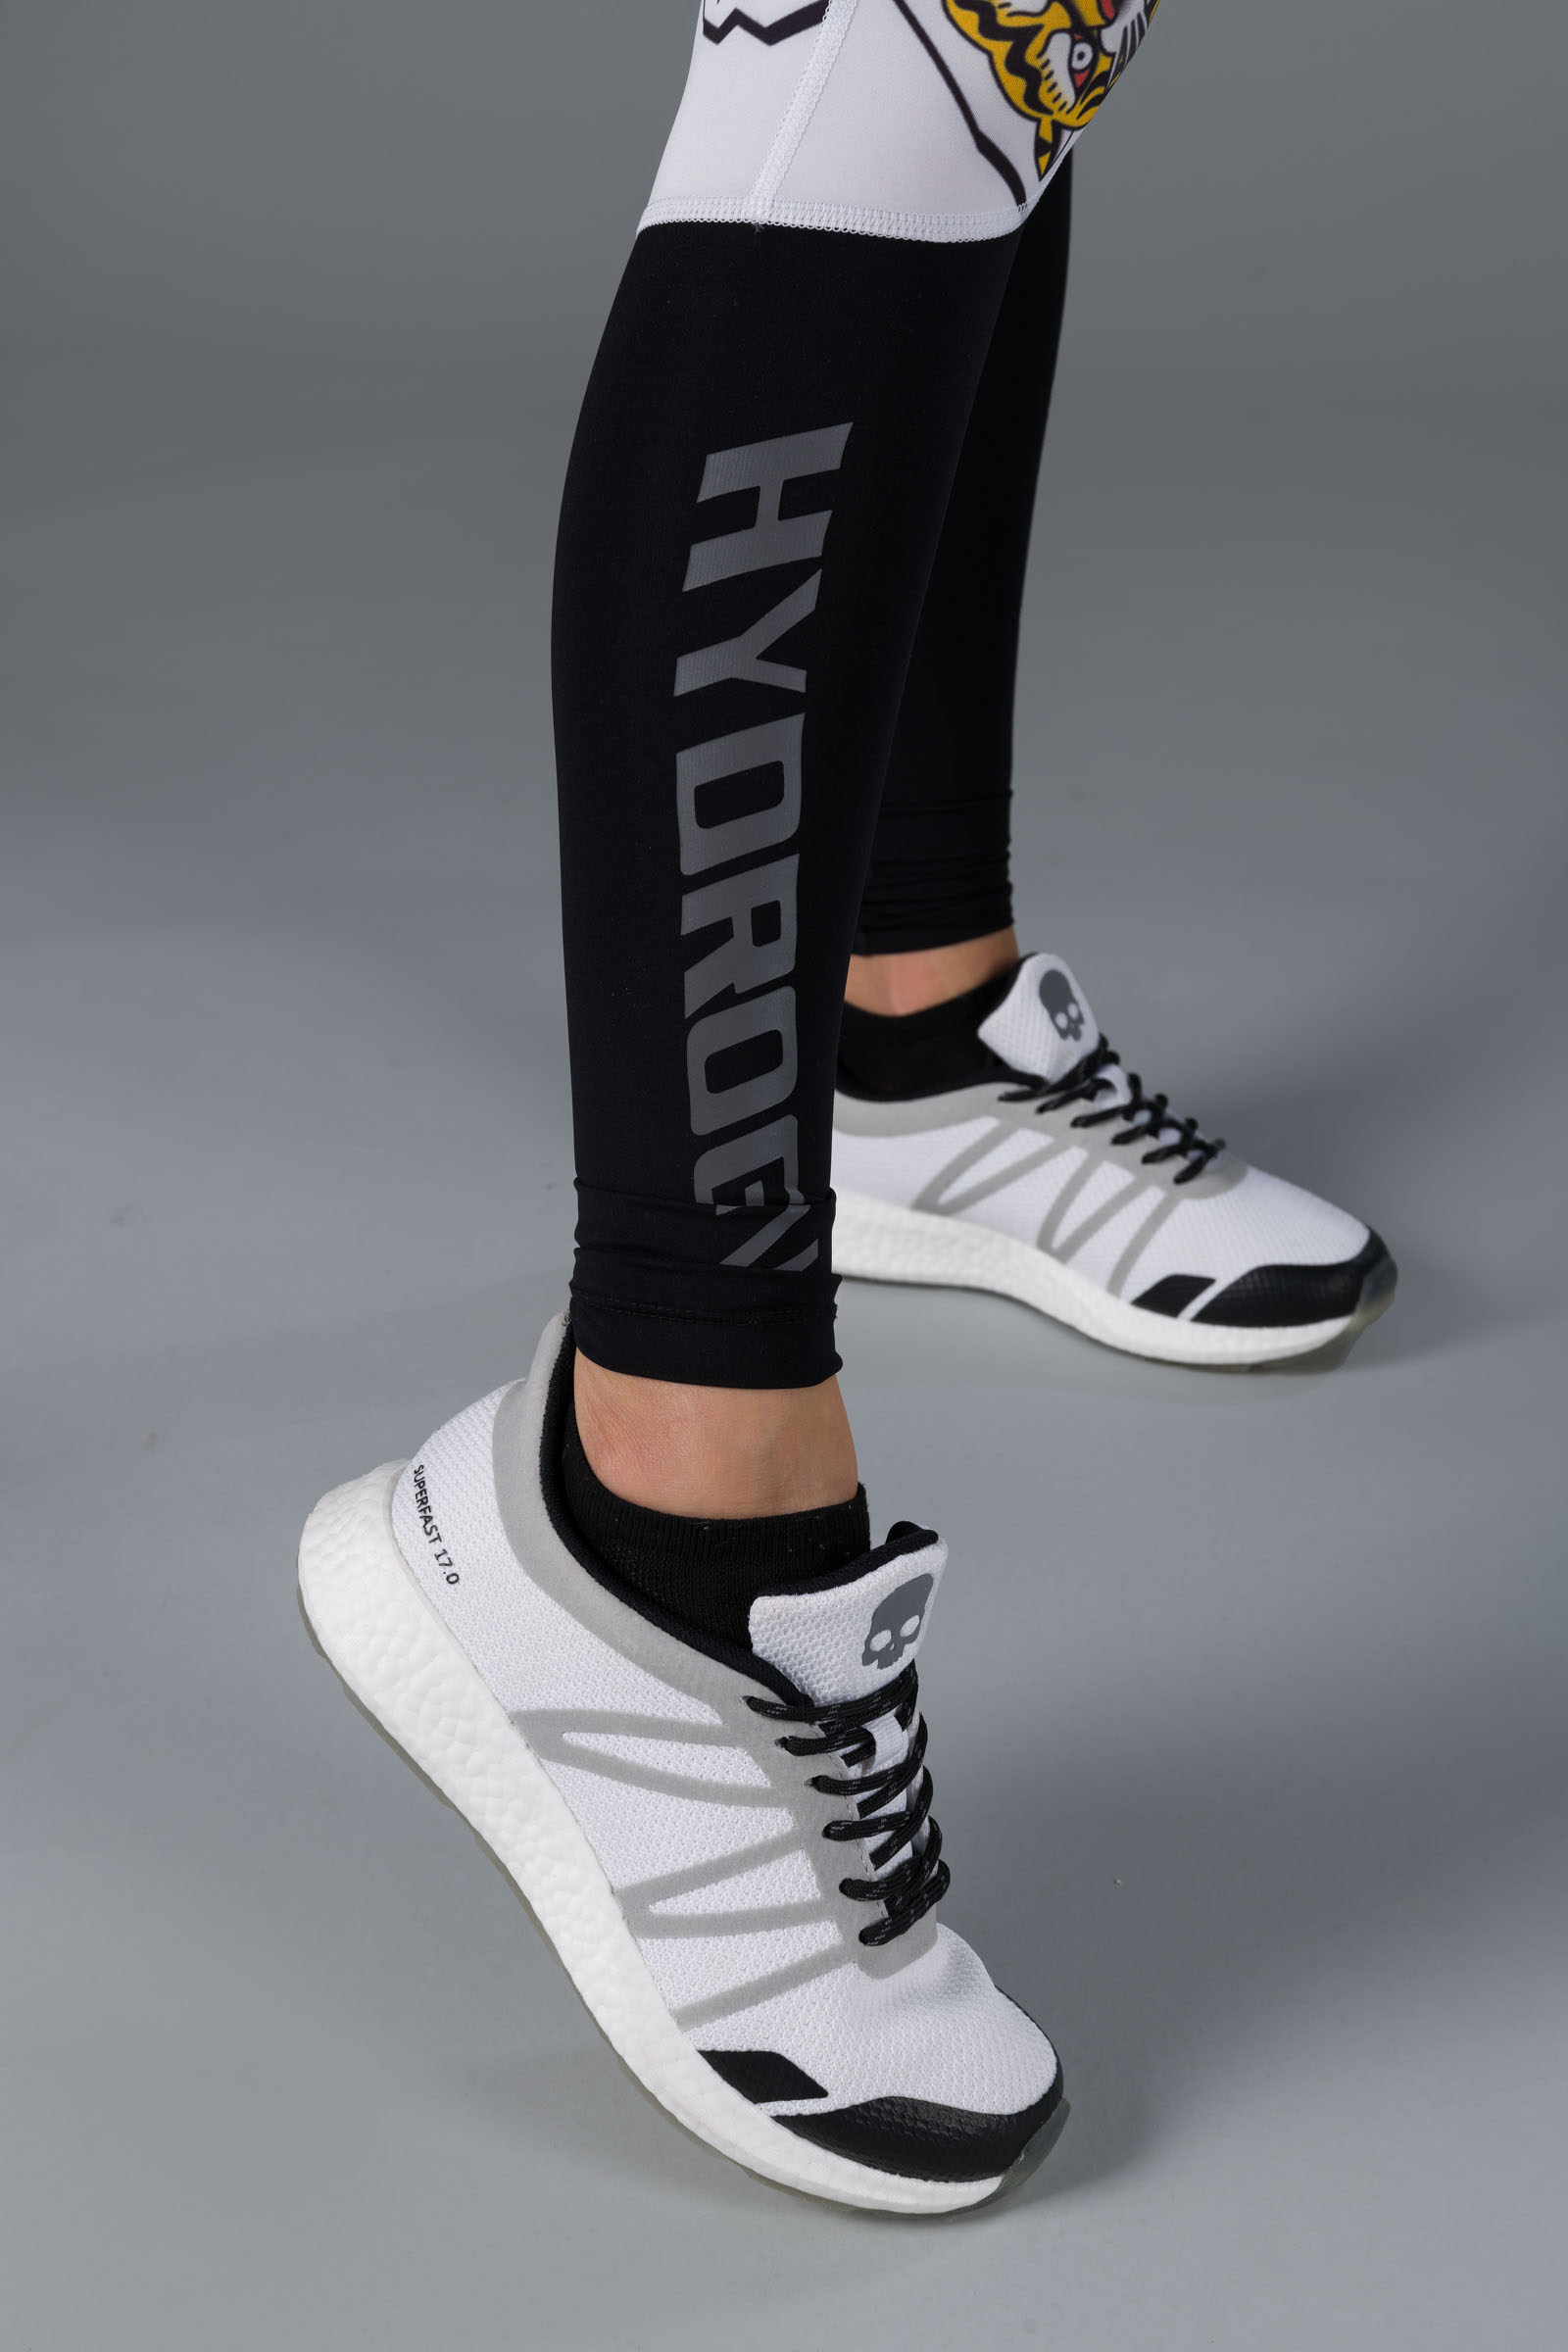 TATTOO LEGGINGS - WHITE/BLACK - Hydrogen - Luxury Sportwear